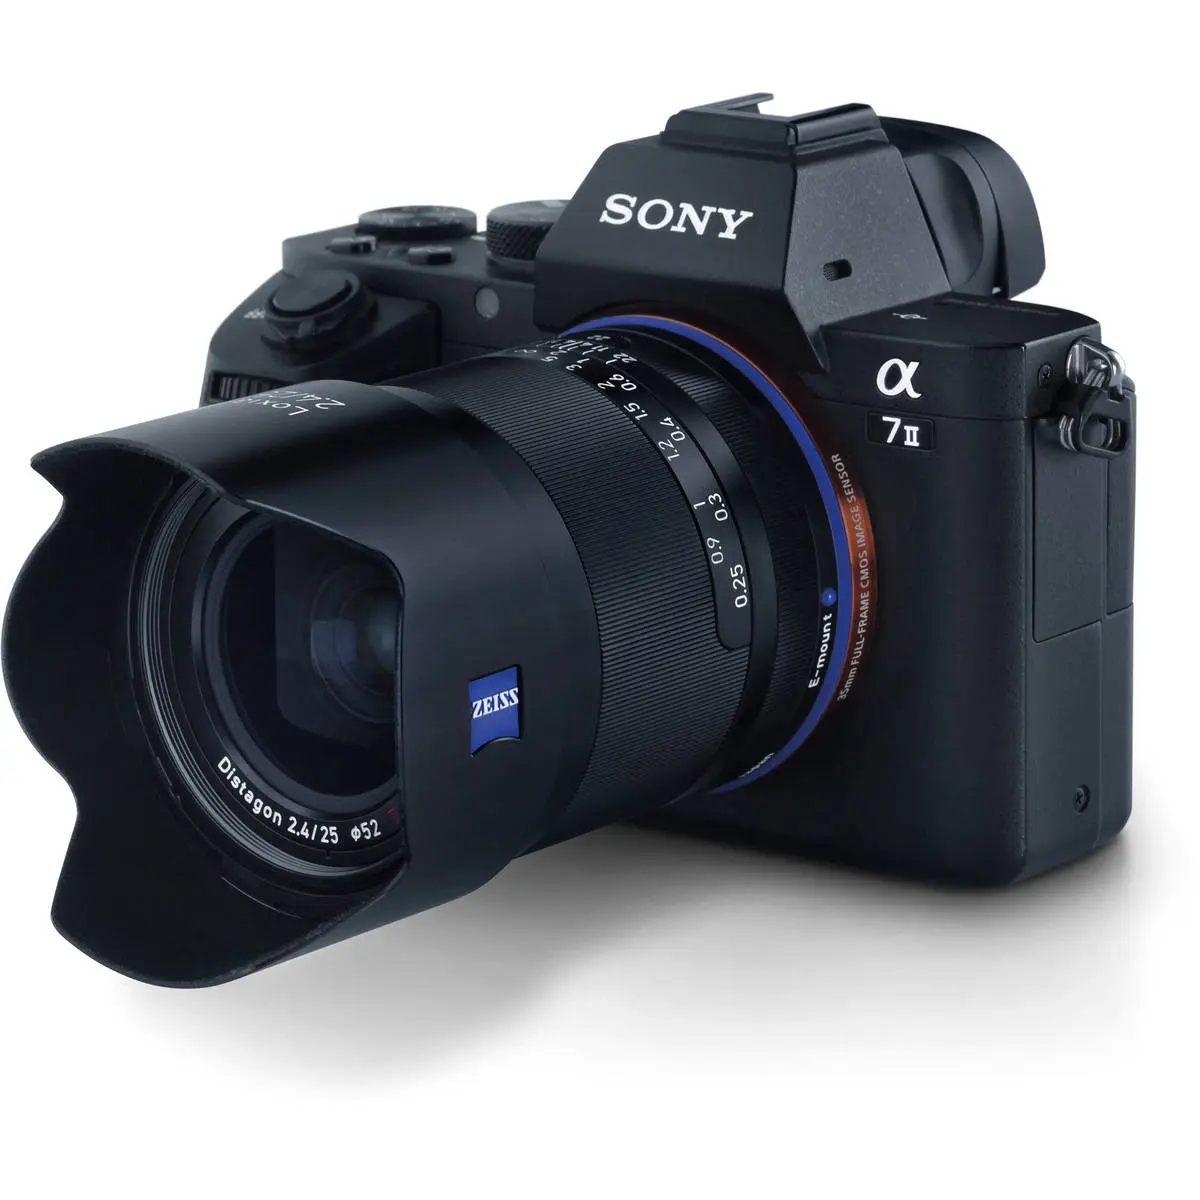 18. Carl Zeiss Loxia 2.4/25 (Sony FE) Lens